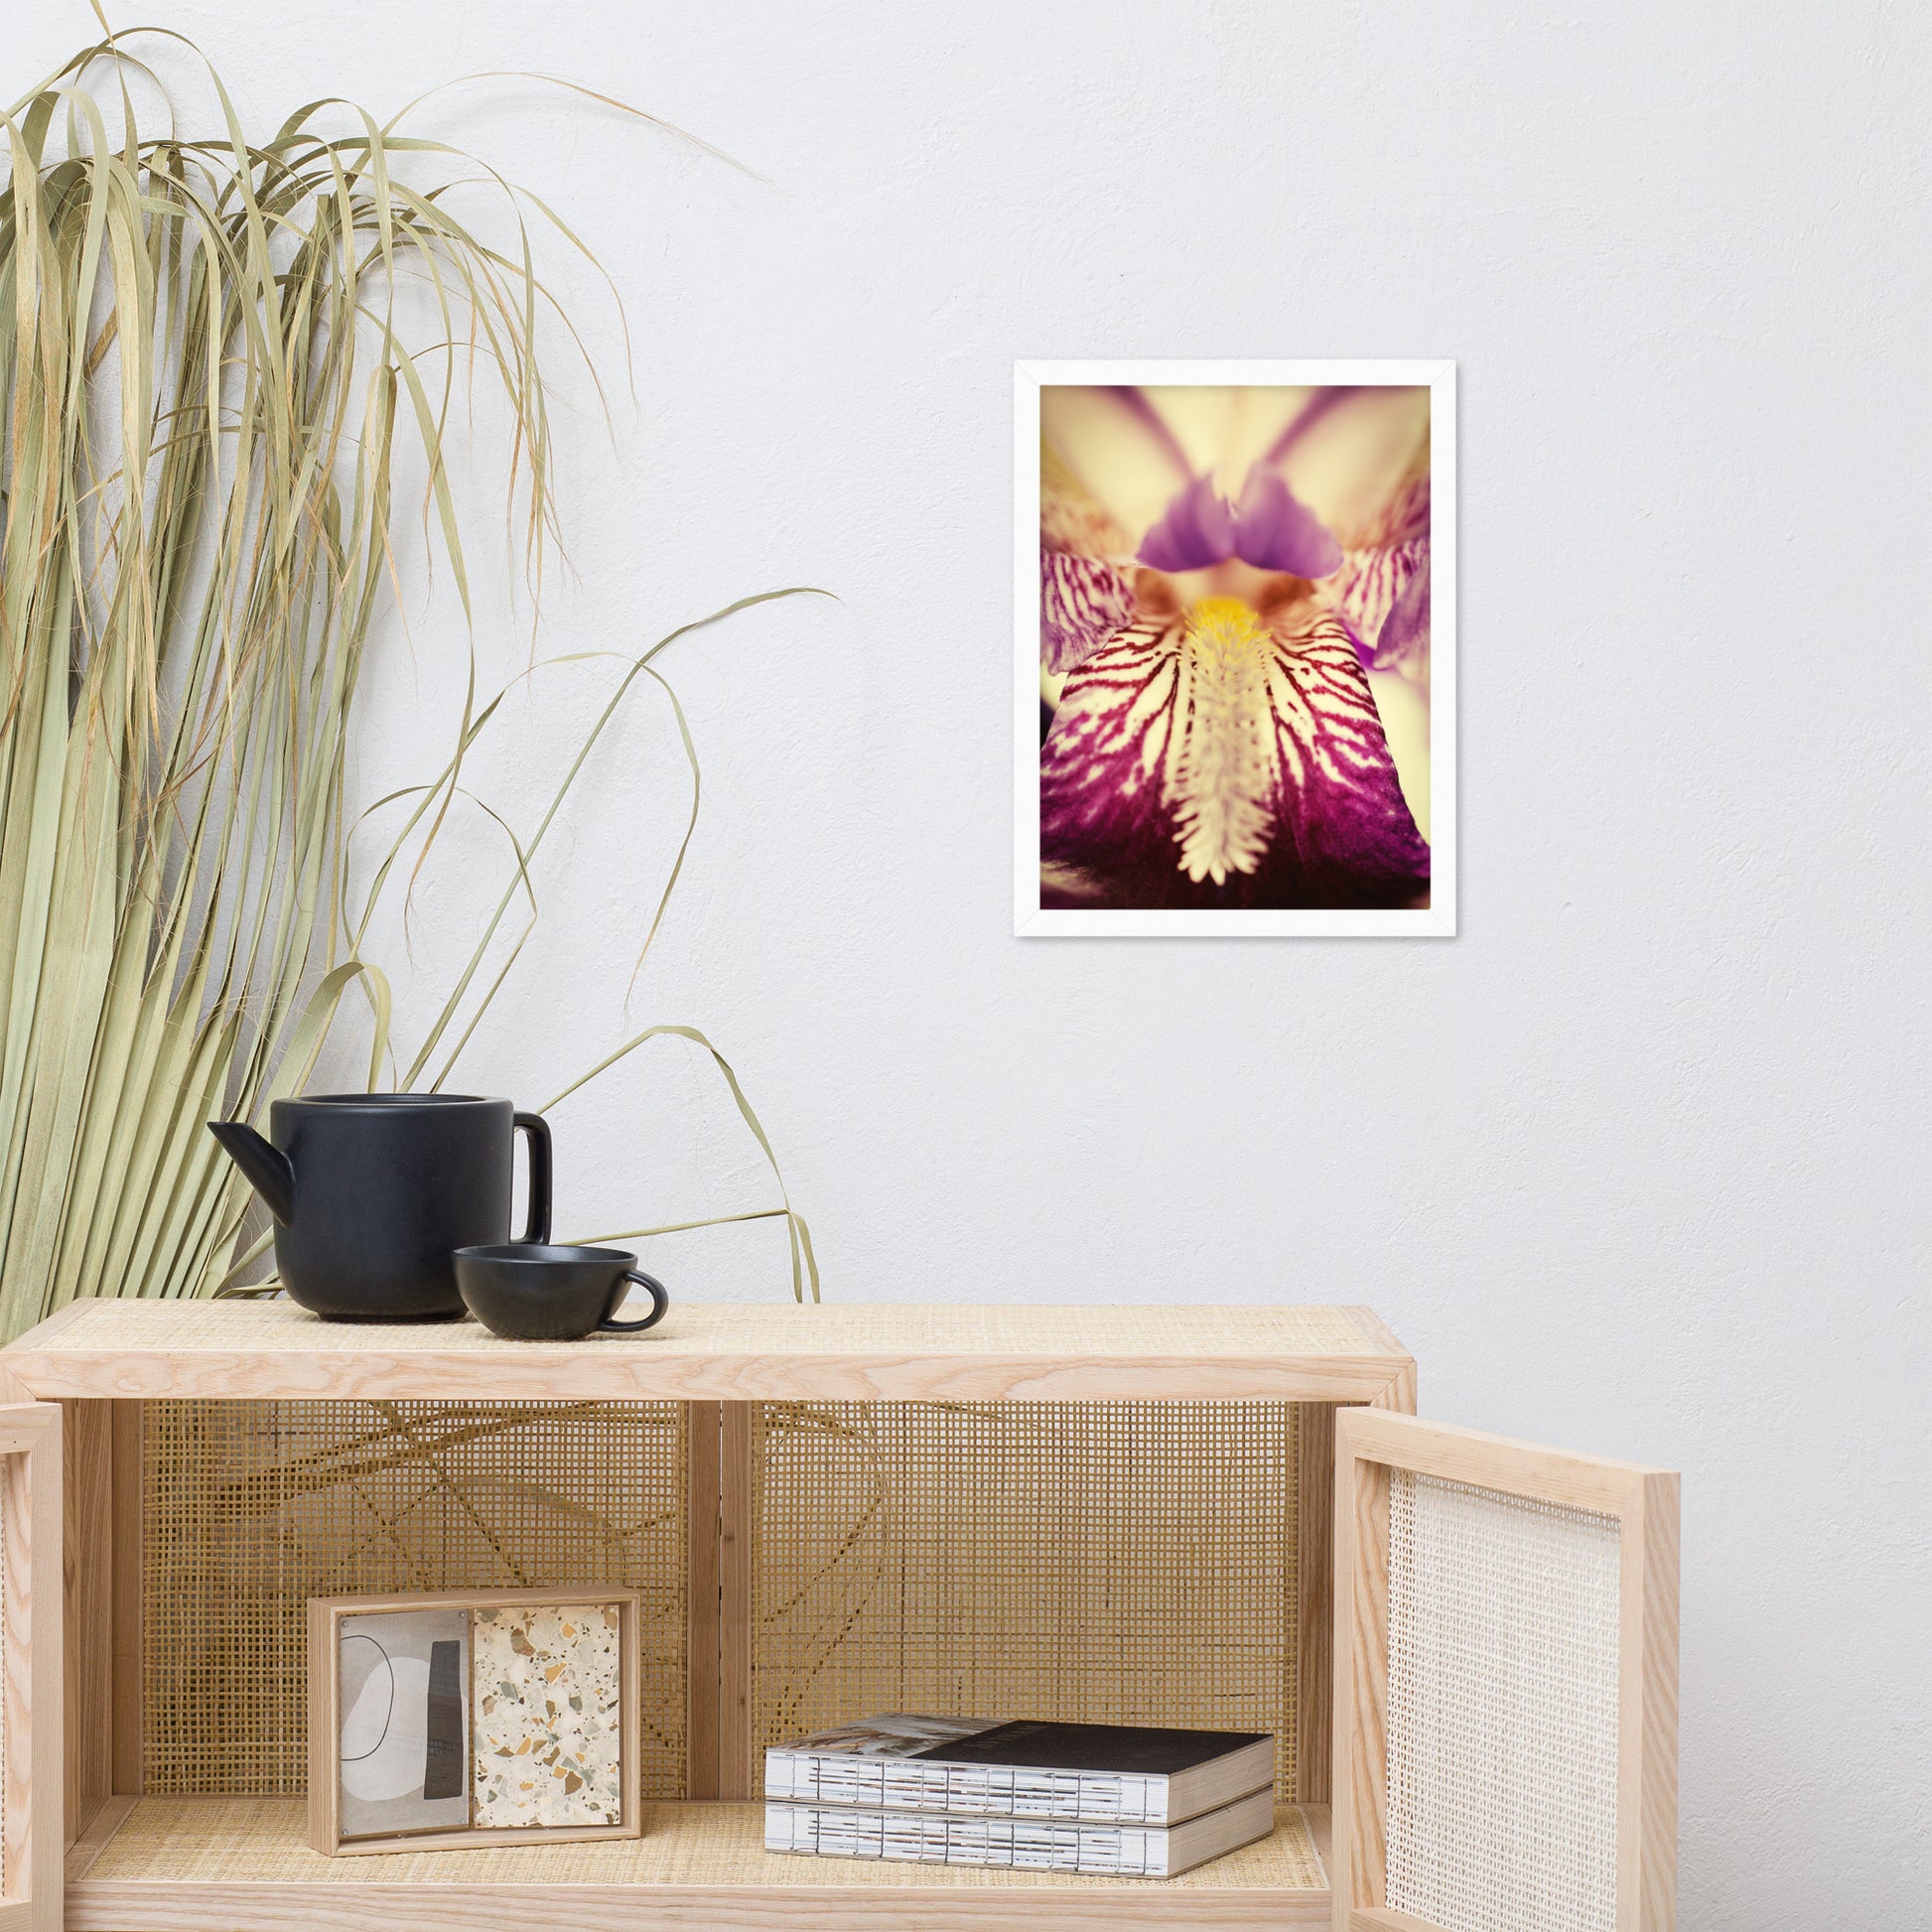 Flower Art Prints: Antiqued Iris Floral / Flora / Botanical / Nature Photo Framed Wall Art Print - Artwork - Modern Wall Decor